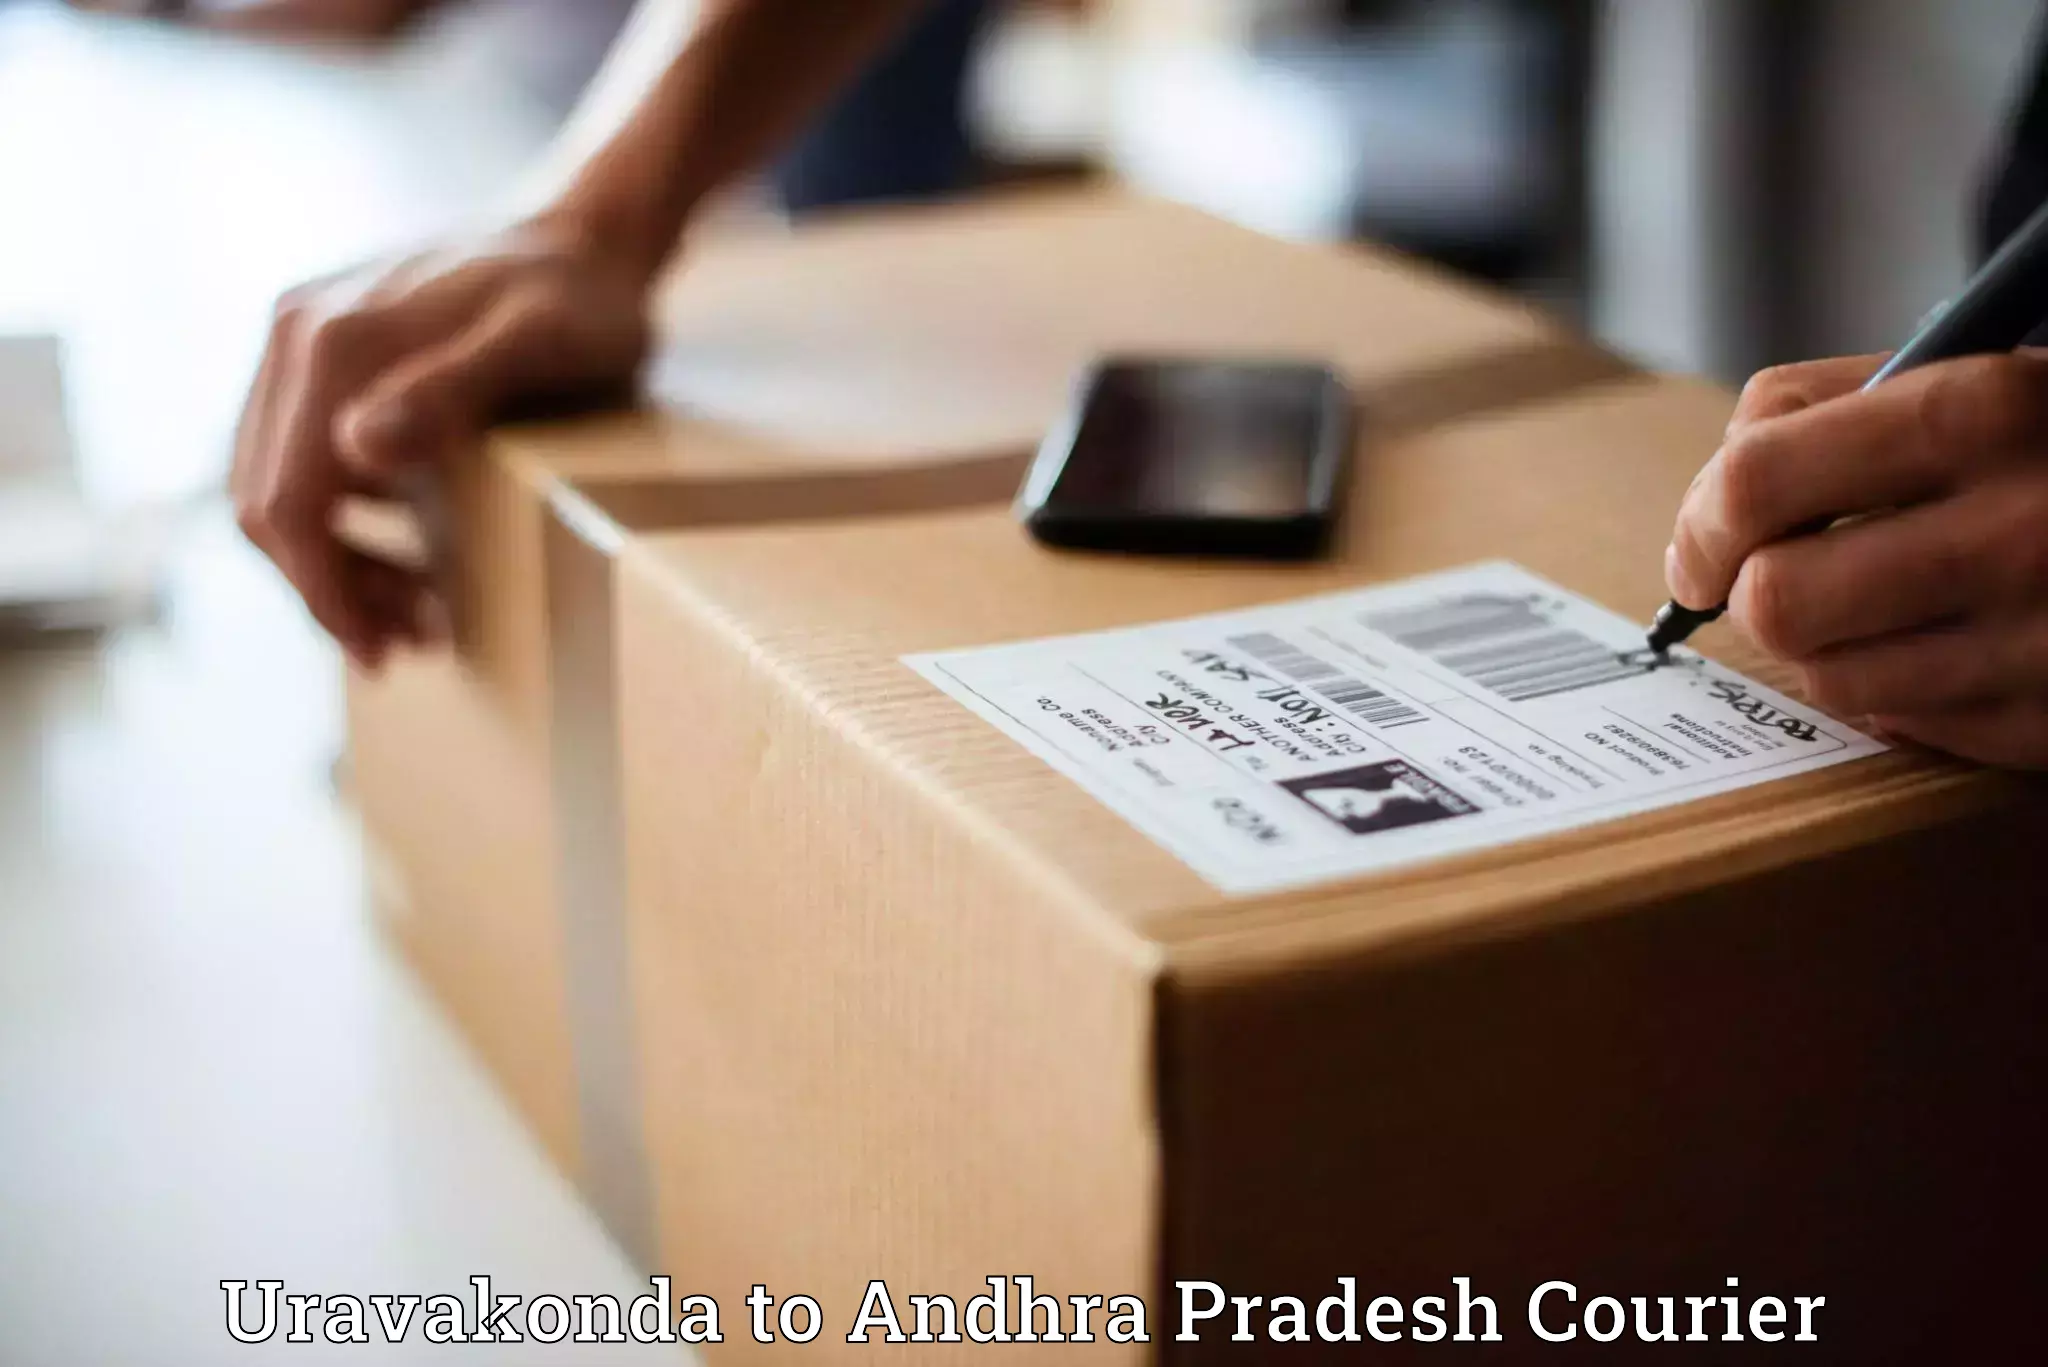 Cash on delivery service Uravakonda to Krishna AP